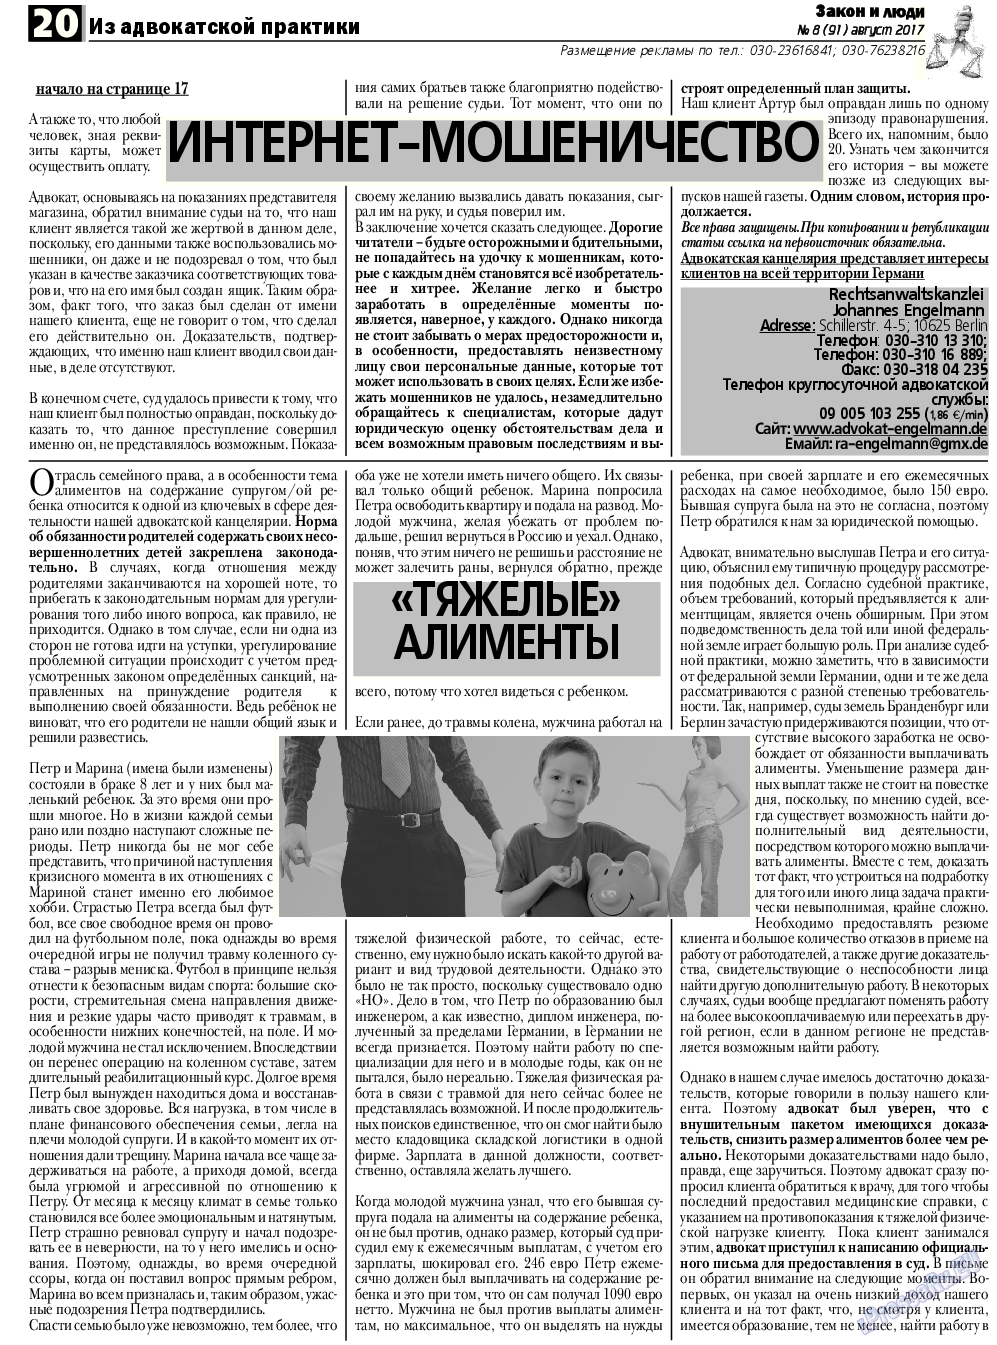 Закон и люди, газета. 2017 №8 стр.20